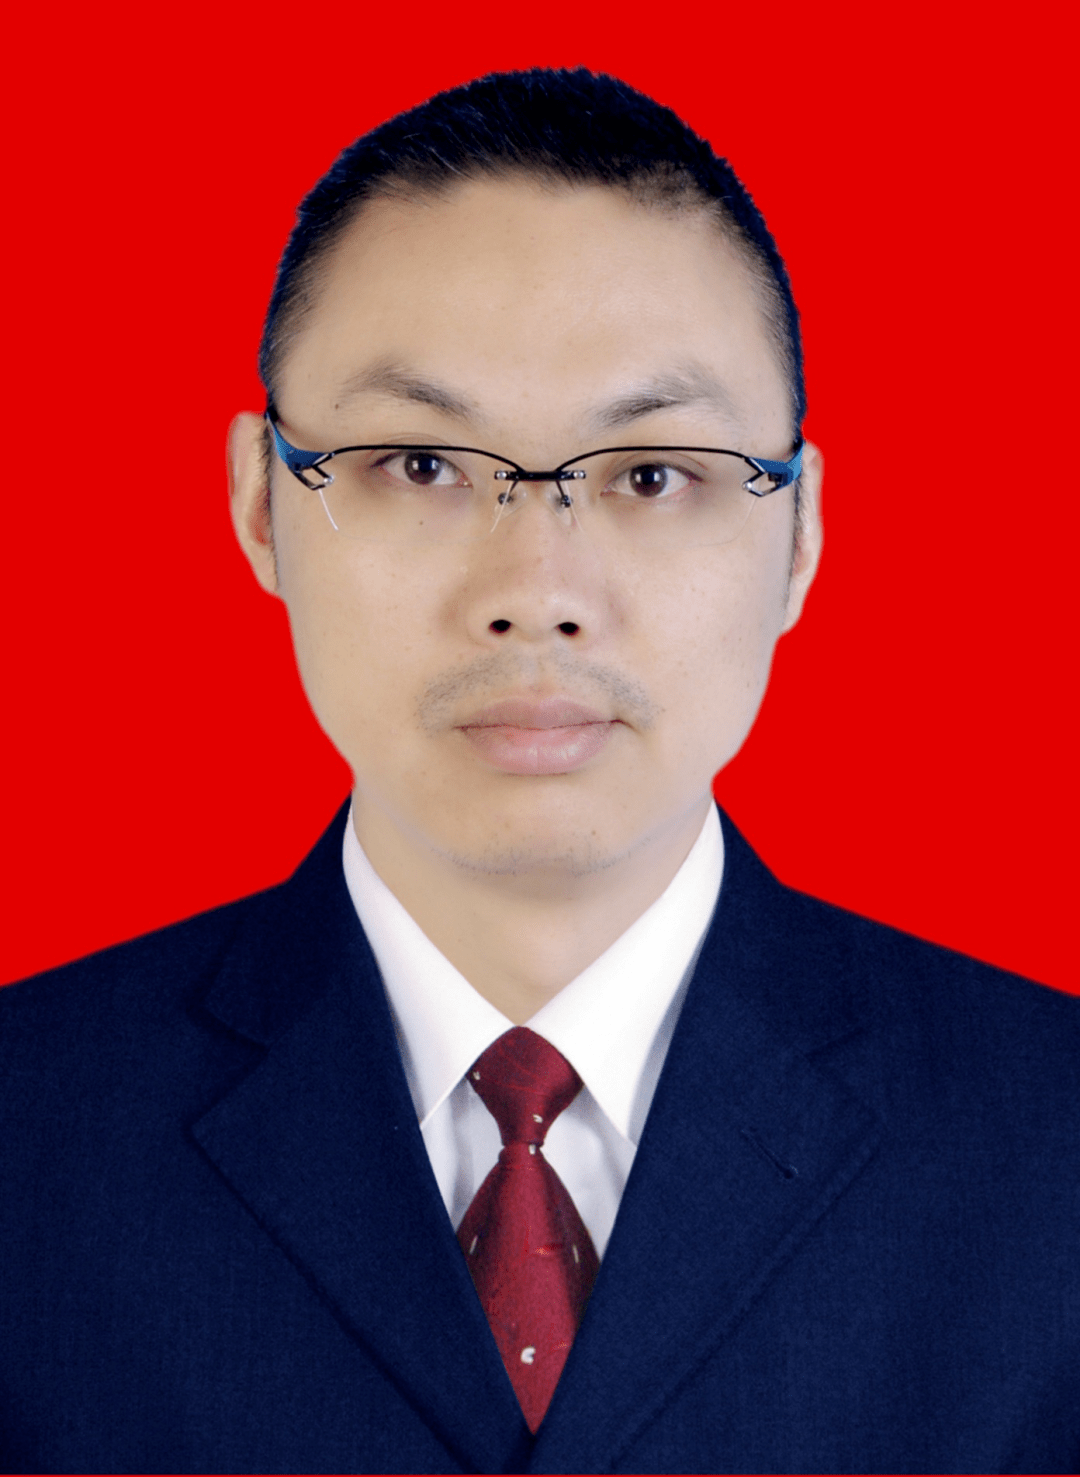 赵晓,男,汉族,云南威信人,1976年12月生,系威信县人民医院副主任医师.